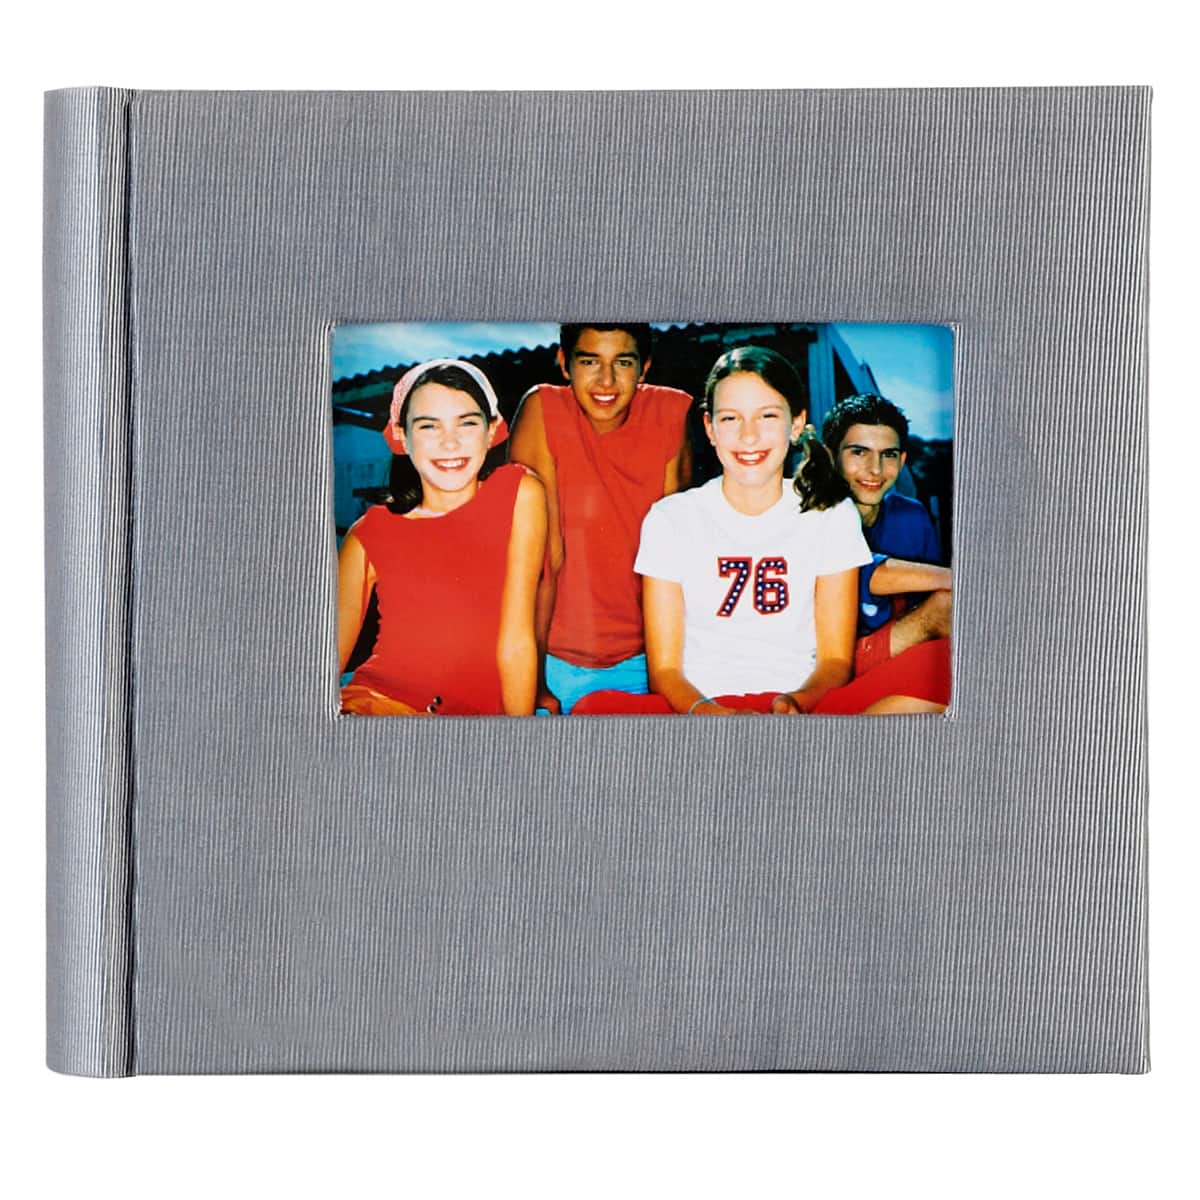 4x6 Transparent Photo Album Set  Photo album, Photo album storage, Photo  album organization